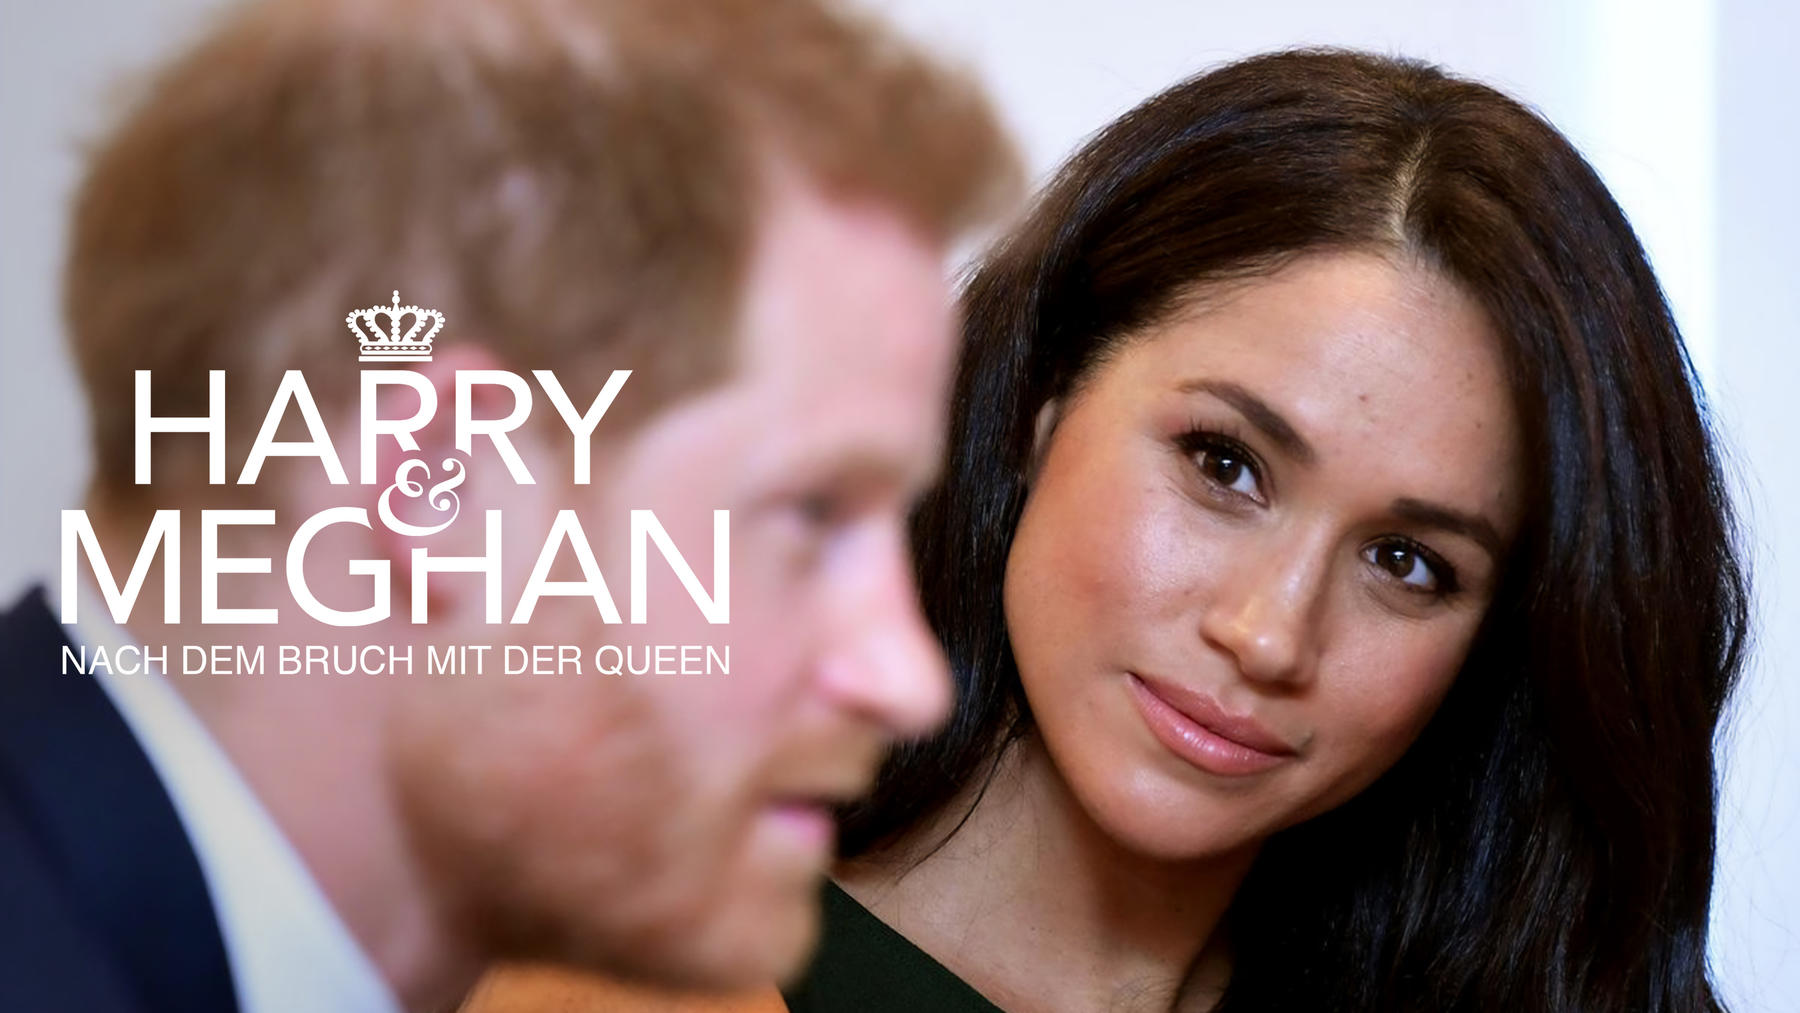 Harry & Meghan: Nach dem Bruch mit der Queen